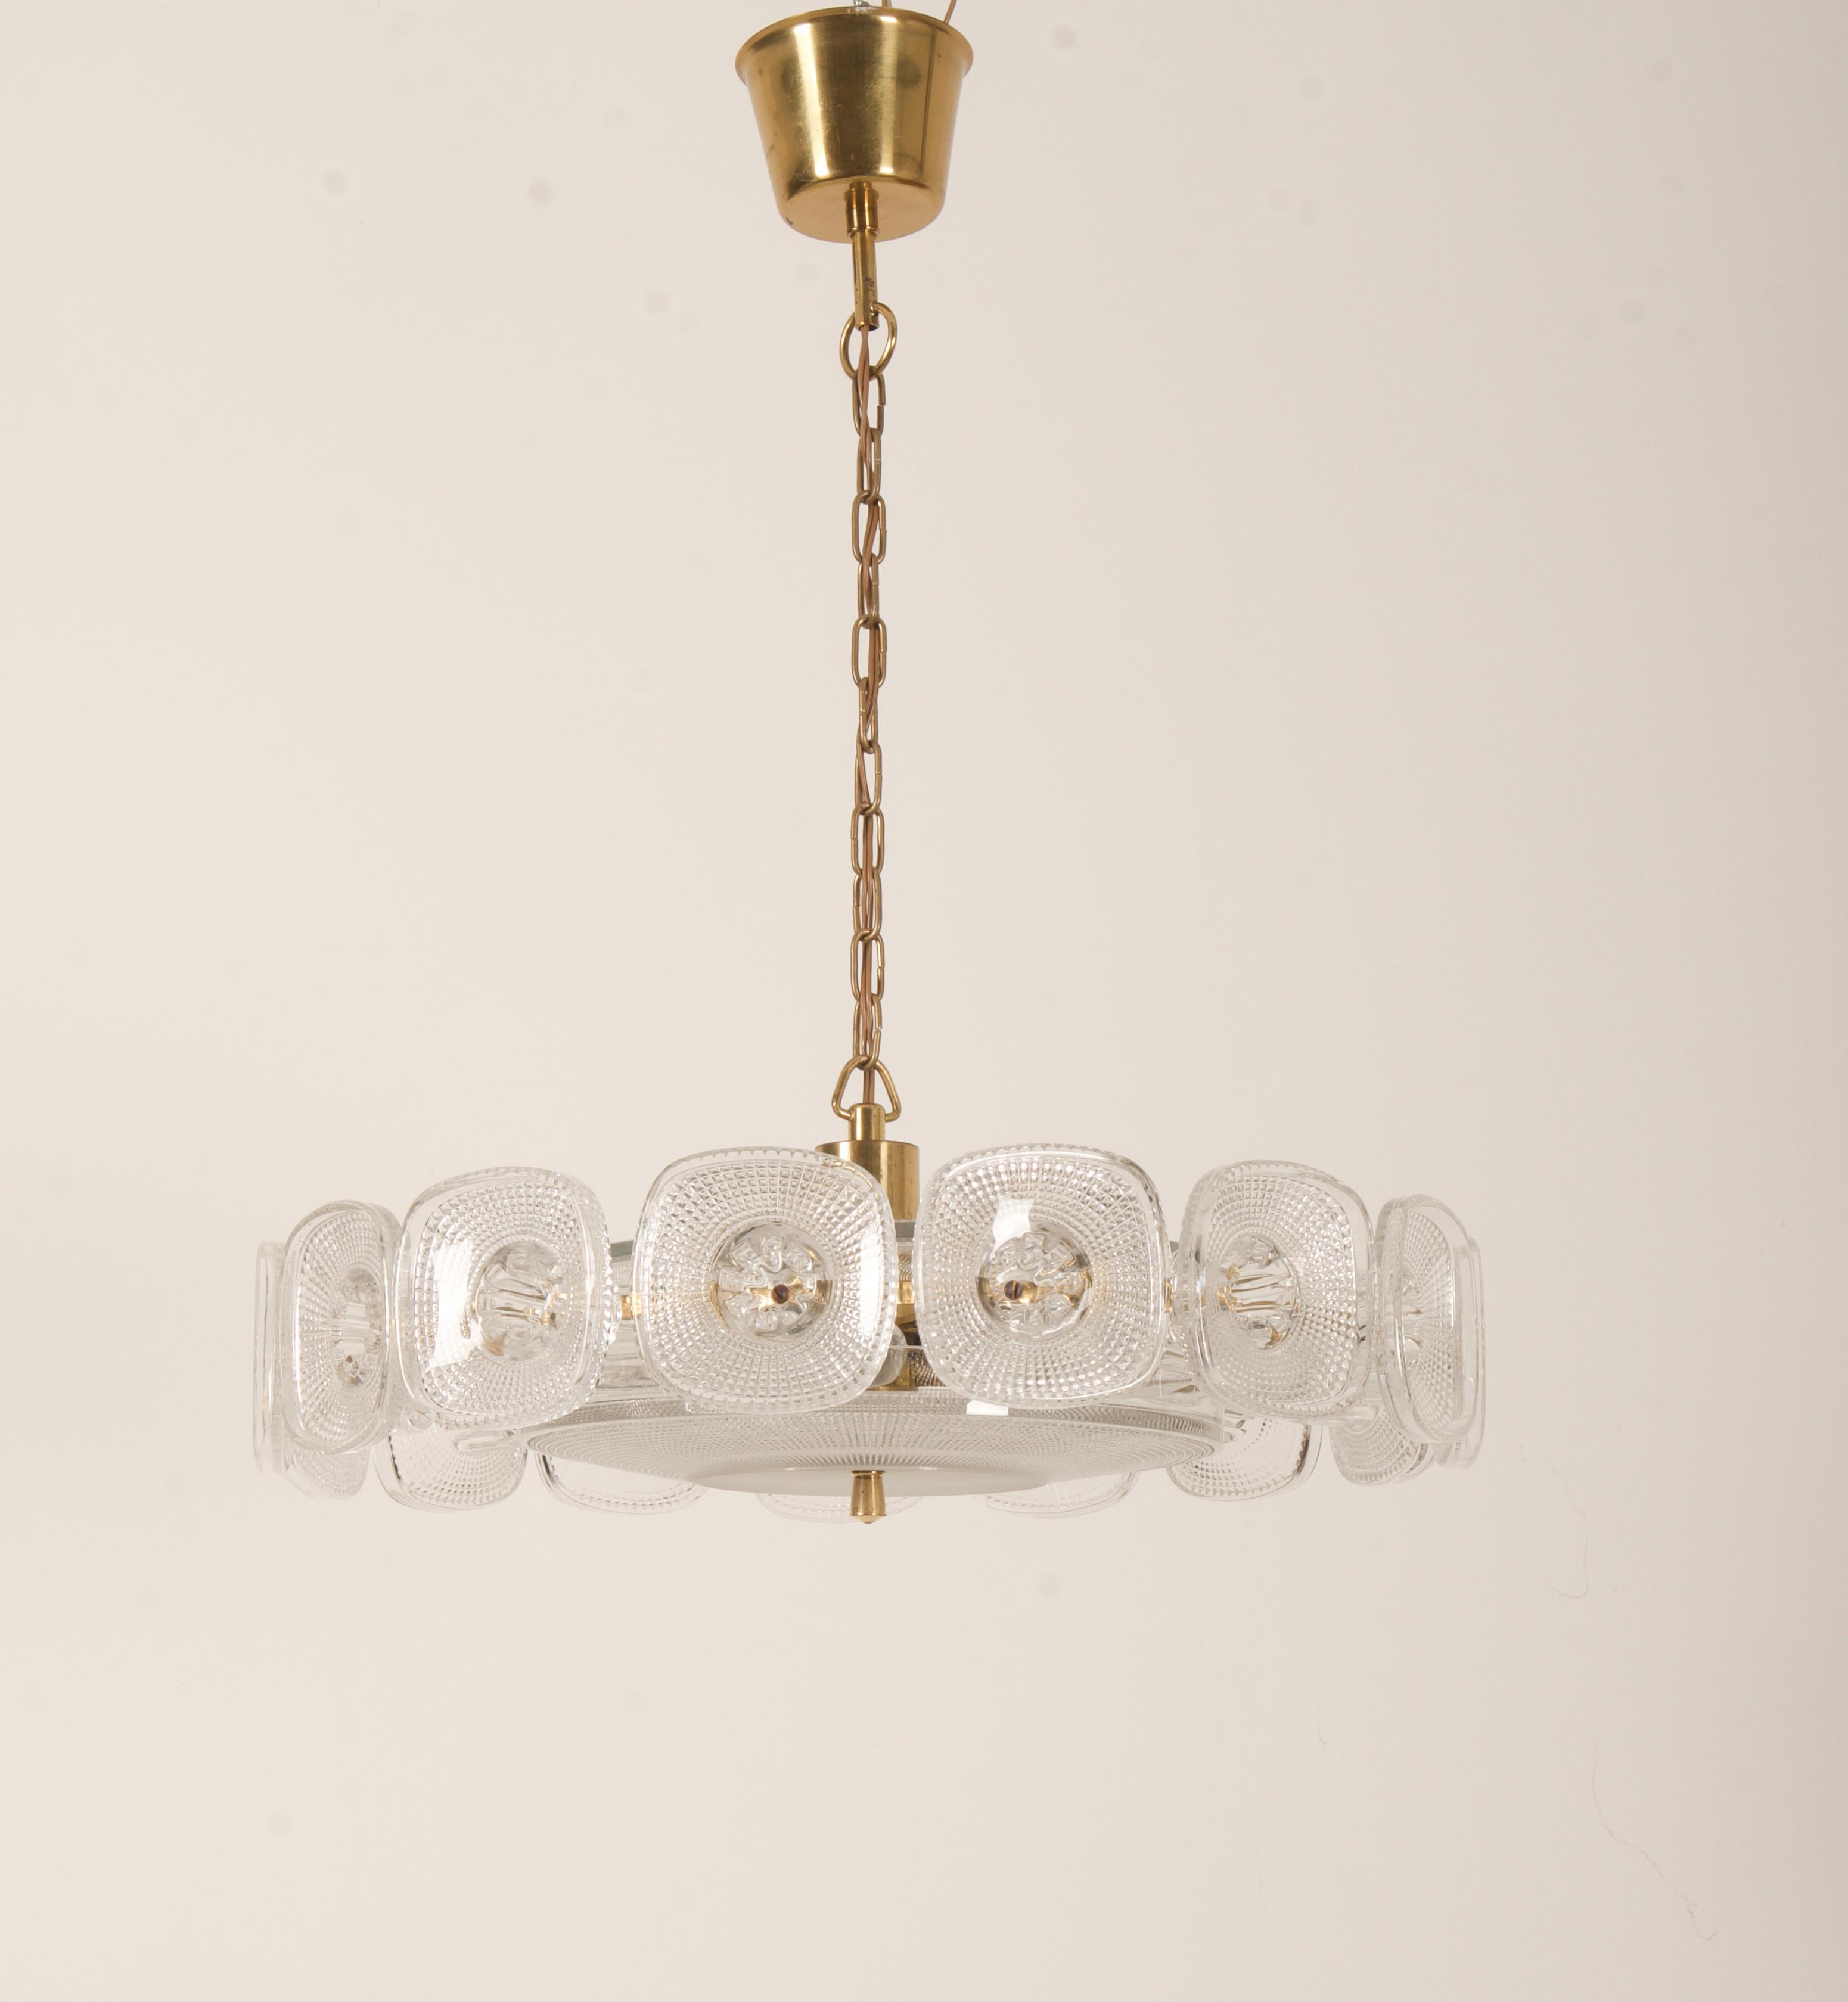 Construction en laiton plaqué or, équipée de cinq douilles E14. Le décor de l'ornement en verre pressé, conçu par Kjell Blomberg pour Gullaskrufs glasbruk en Suède dans les années 1960.